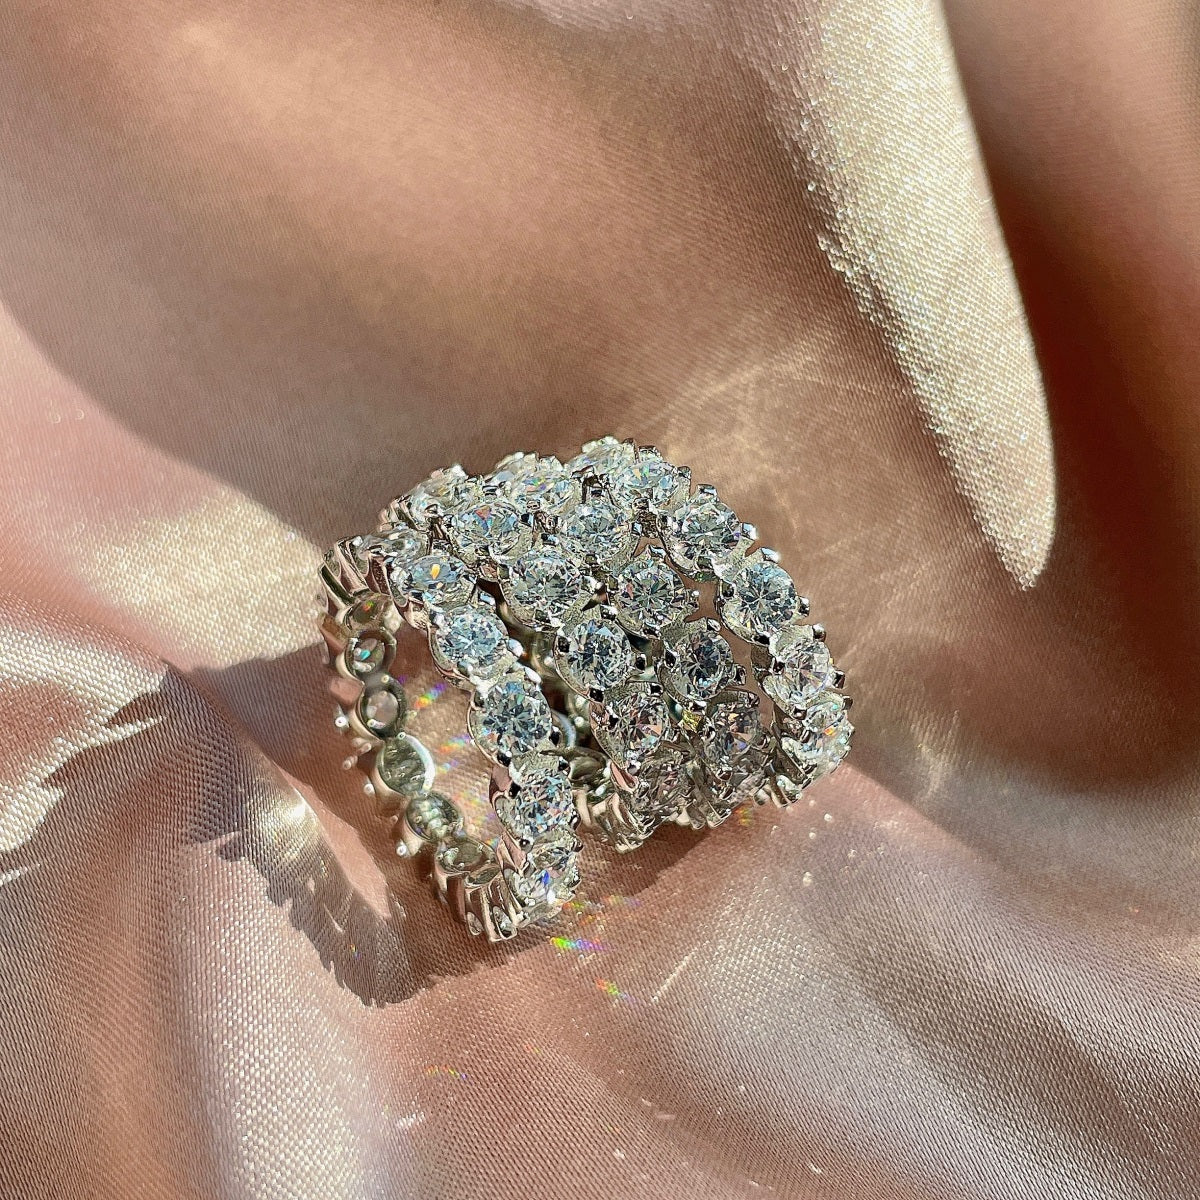 Silber Ring mit Diamanten - Arabisco